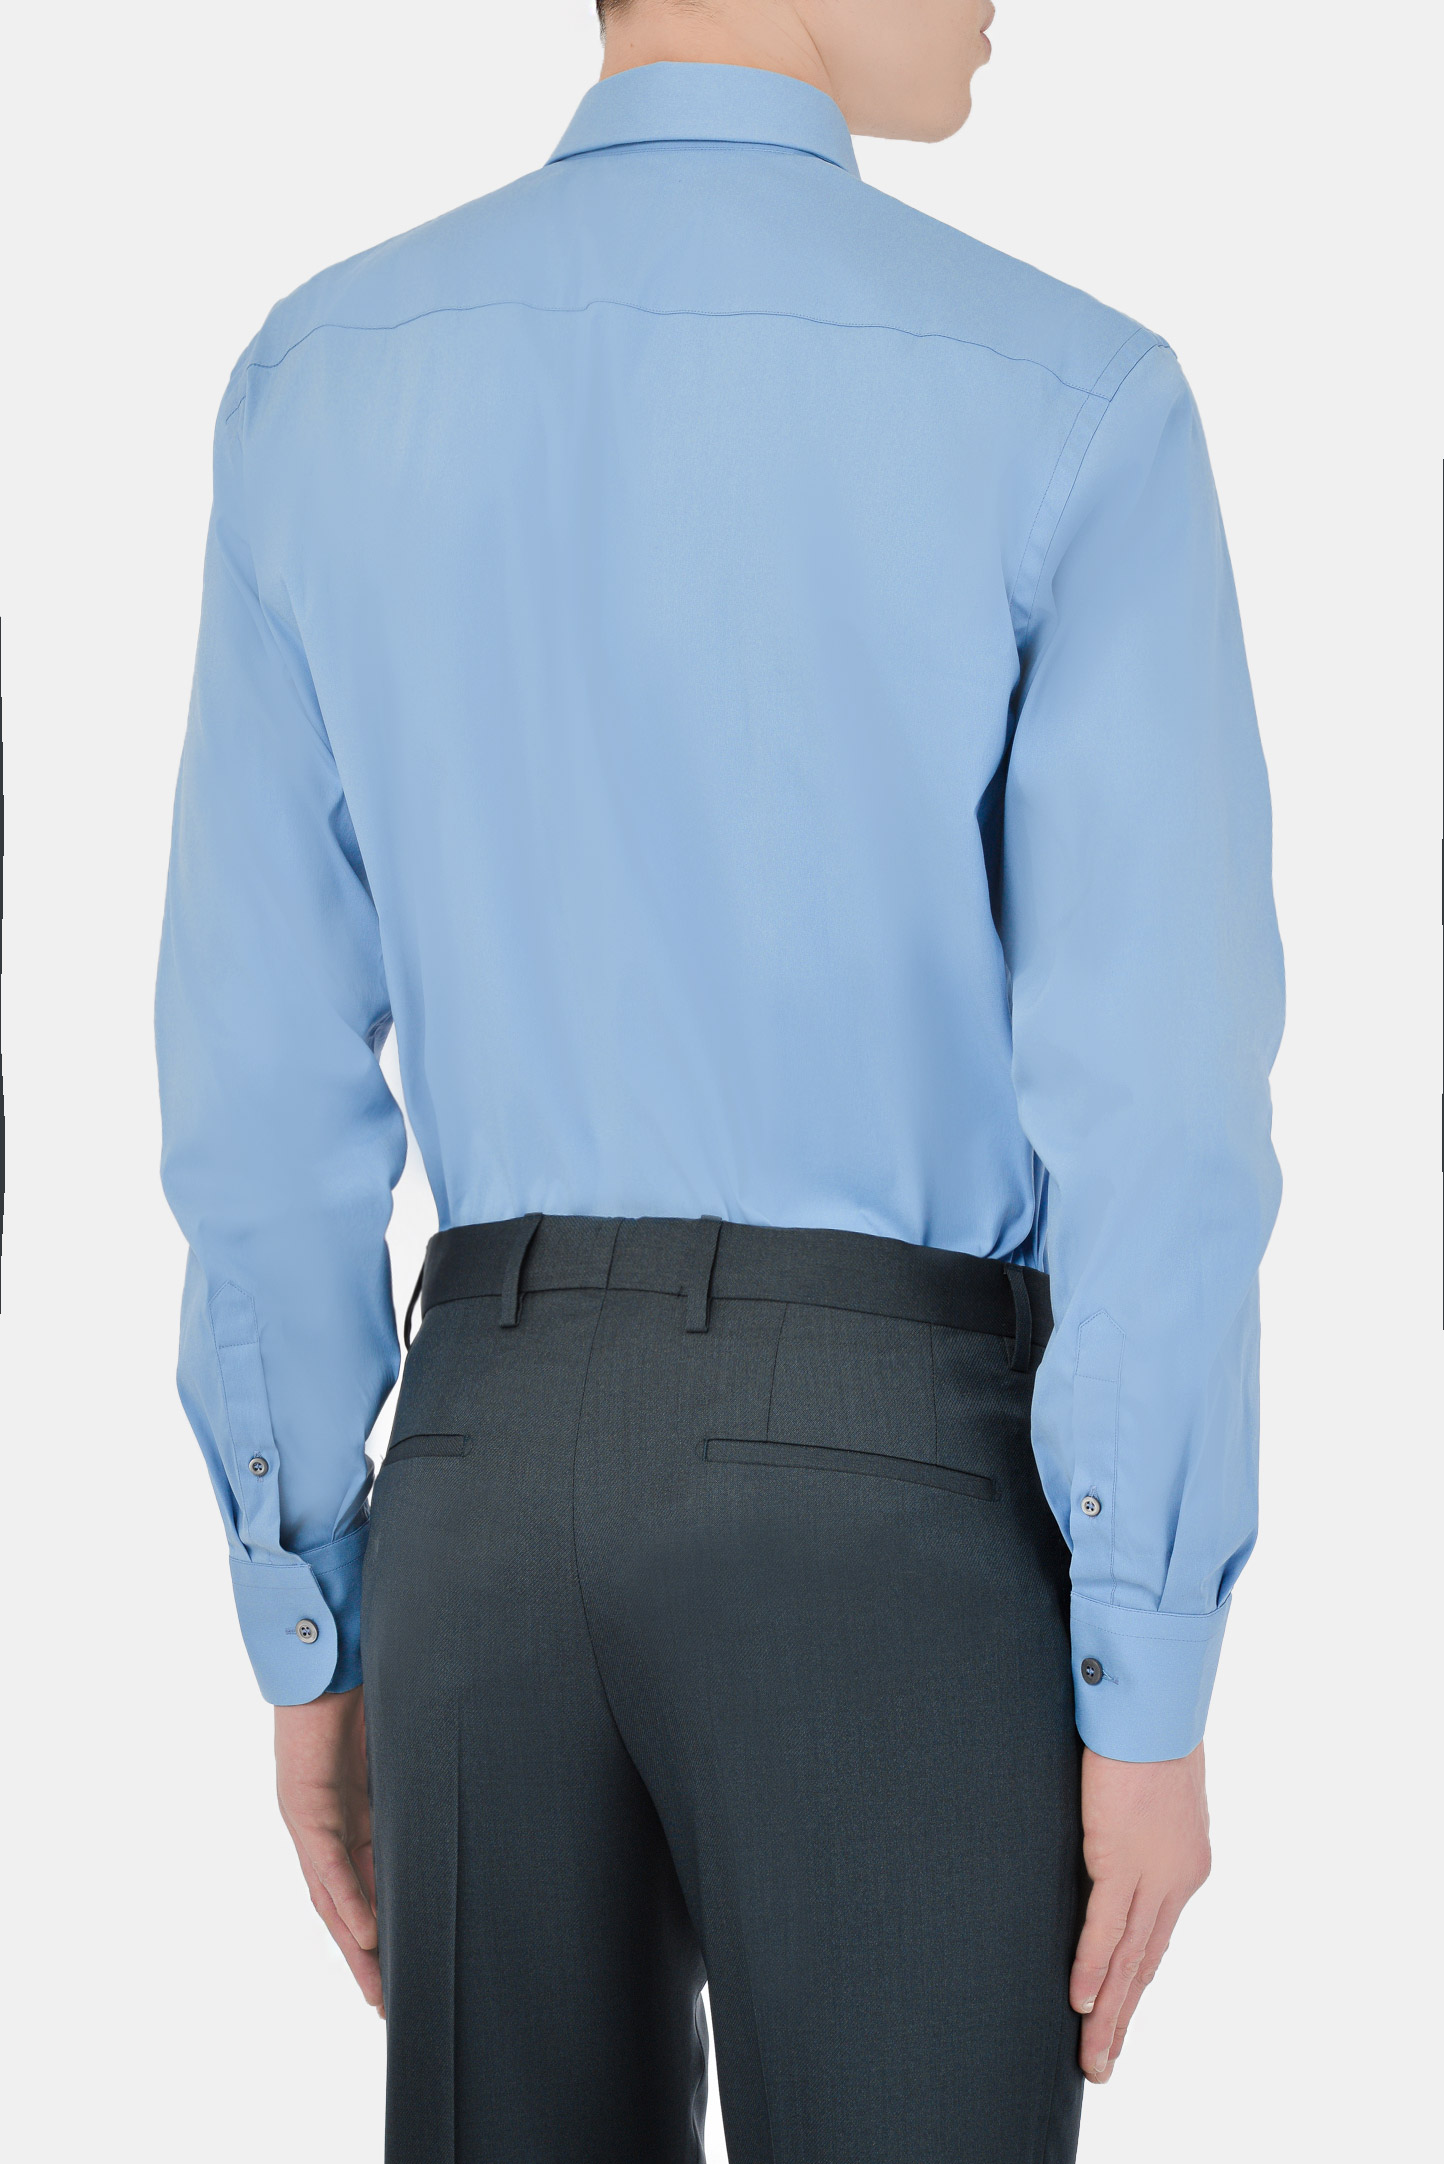 Рубашка PRADA UCM473 F62, цвет: Голубой, Мужской